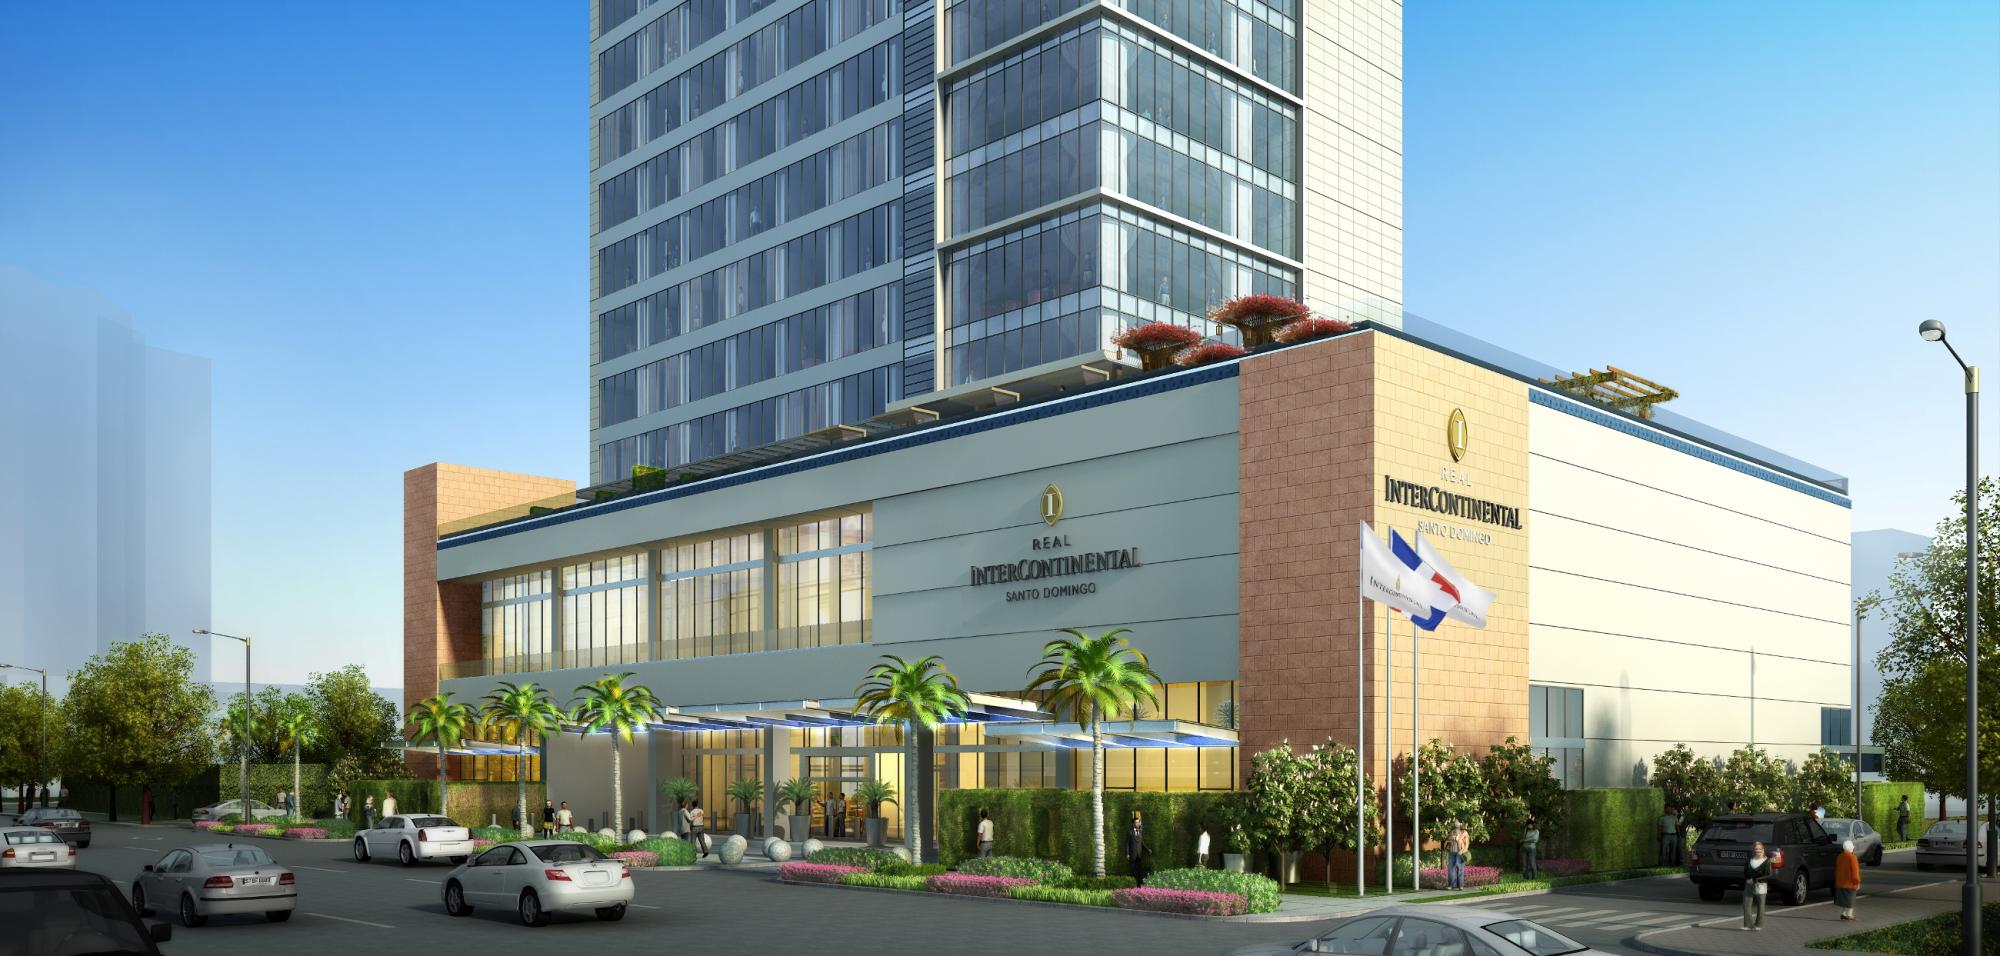 Hotel Real Intercontinental abre hoy en Santo Domingo